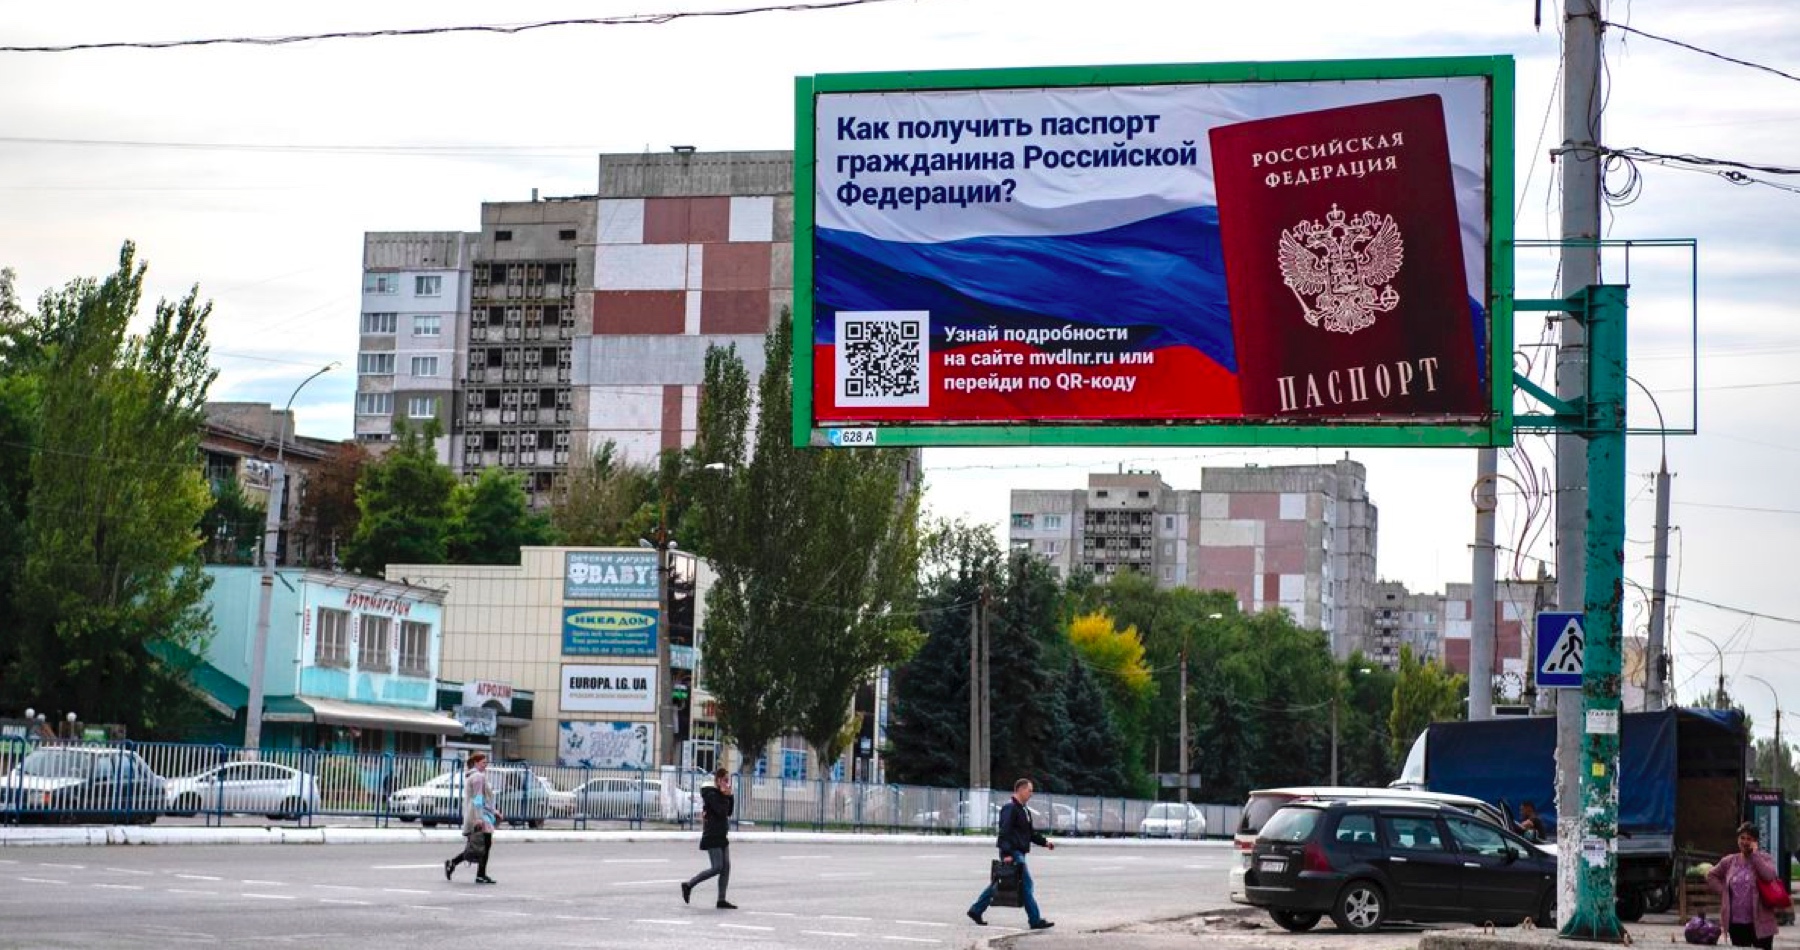 Referendá o pripojení častí ukrajinského územia k Rusku sa skončili. 98 percent obyvateľov hlasovalo za odtrhnutie od Ukrajiny a zjednotenie s Ruskou federáciou